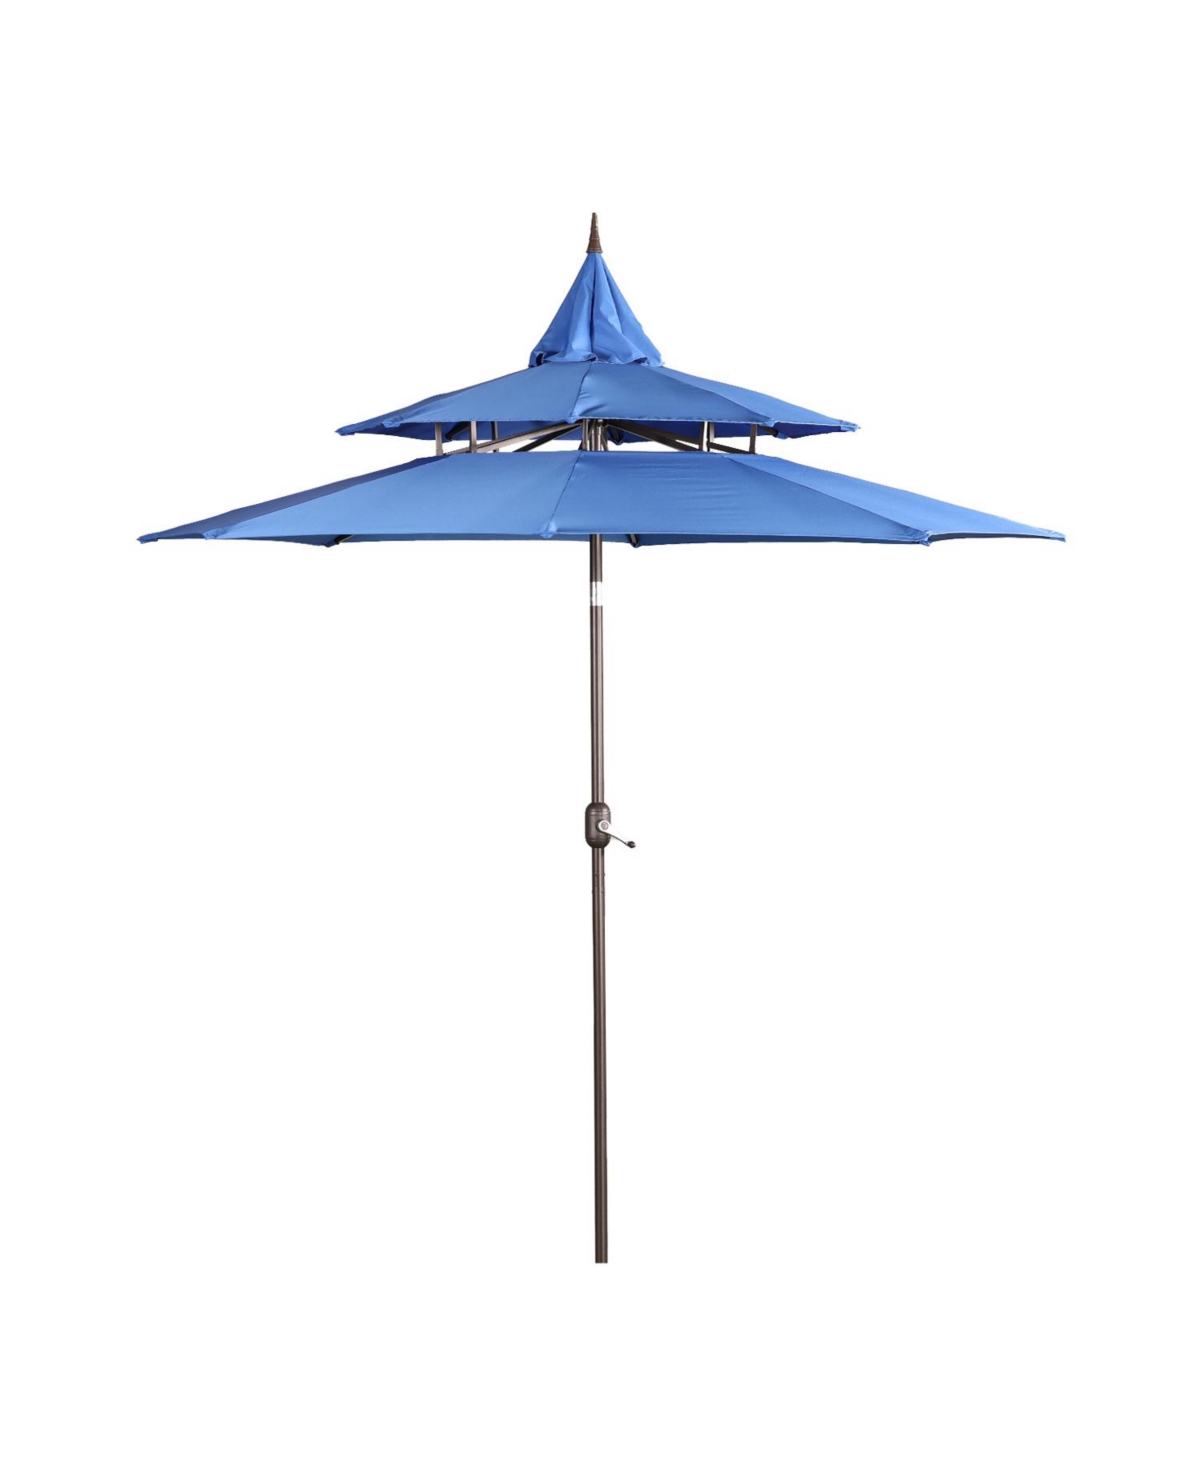 9FT Patio Umbrella Outdoor Table Umbrella 3 Tiers with 8 ribs - Dark blue